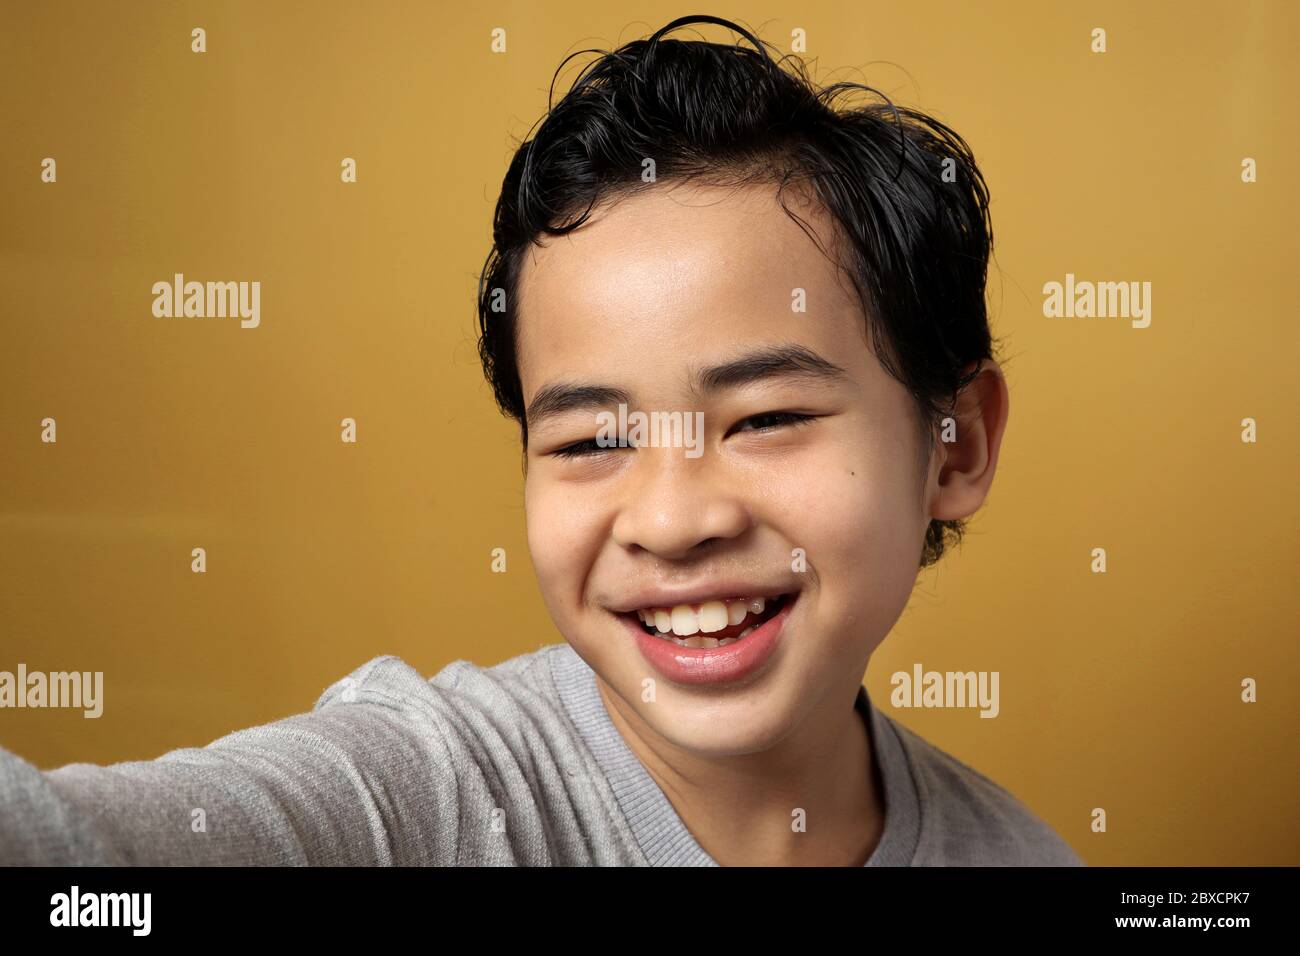 Nahaufnahme von jungen kleinen asiatischen Kind, die ein Selfie-Foto über gelben Hintergrund, zeigt glücklich lächelnd fröhlichen Ausdruck Stockfoto